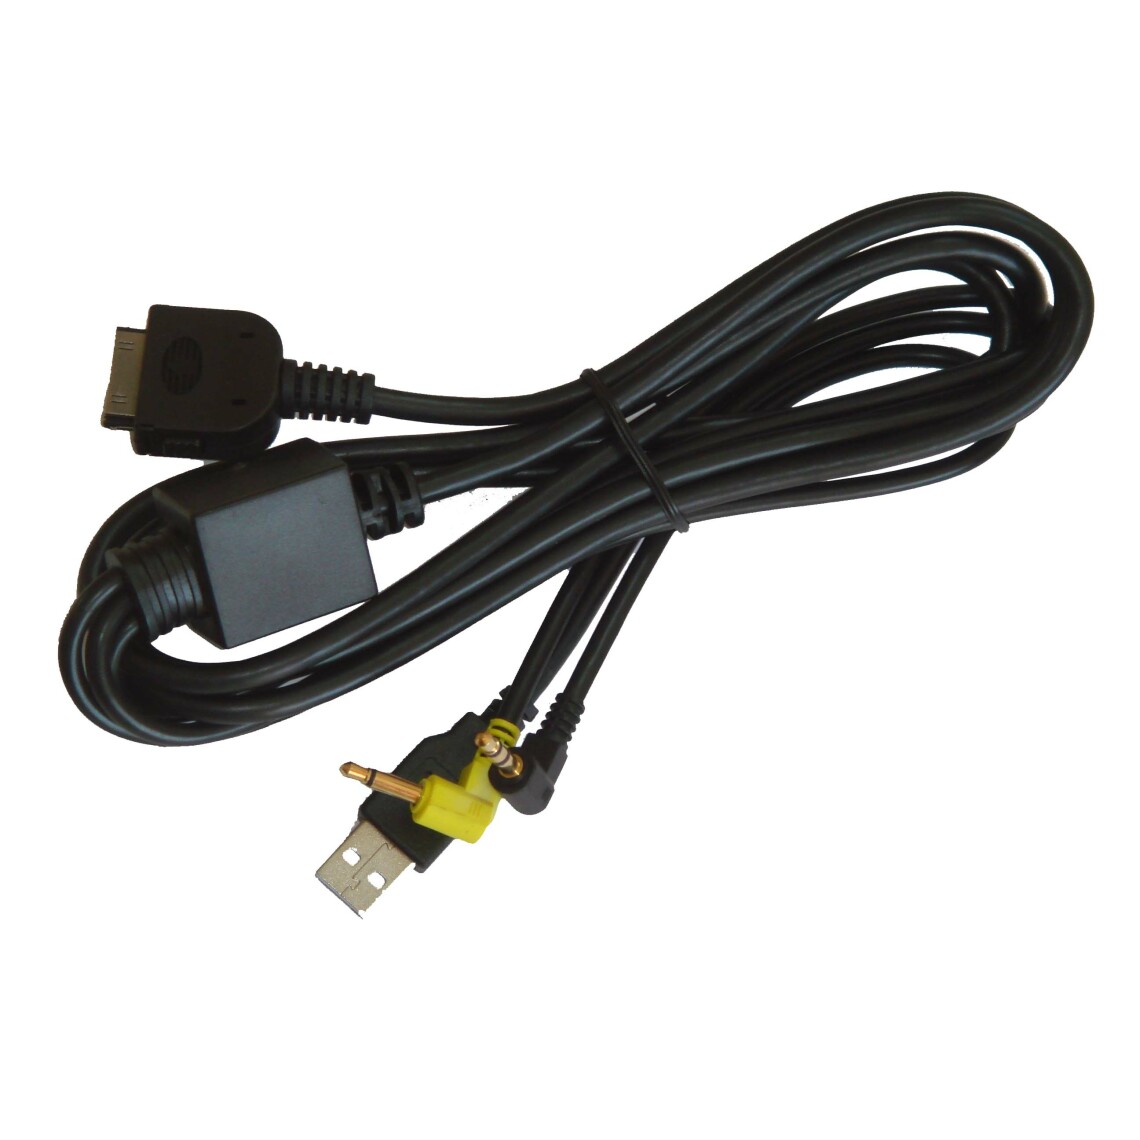 Vhbw - vhbw Câble adaptateur de ligne AUX Radio compatible avec Kenwood KVT-729DVD, KVT-729DVDY, KVT-739DVD, KVT-819DVD, KVT-829DVD voiture - USB, prise jack - Alimentation modulaire